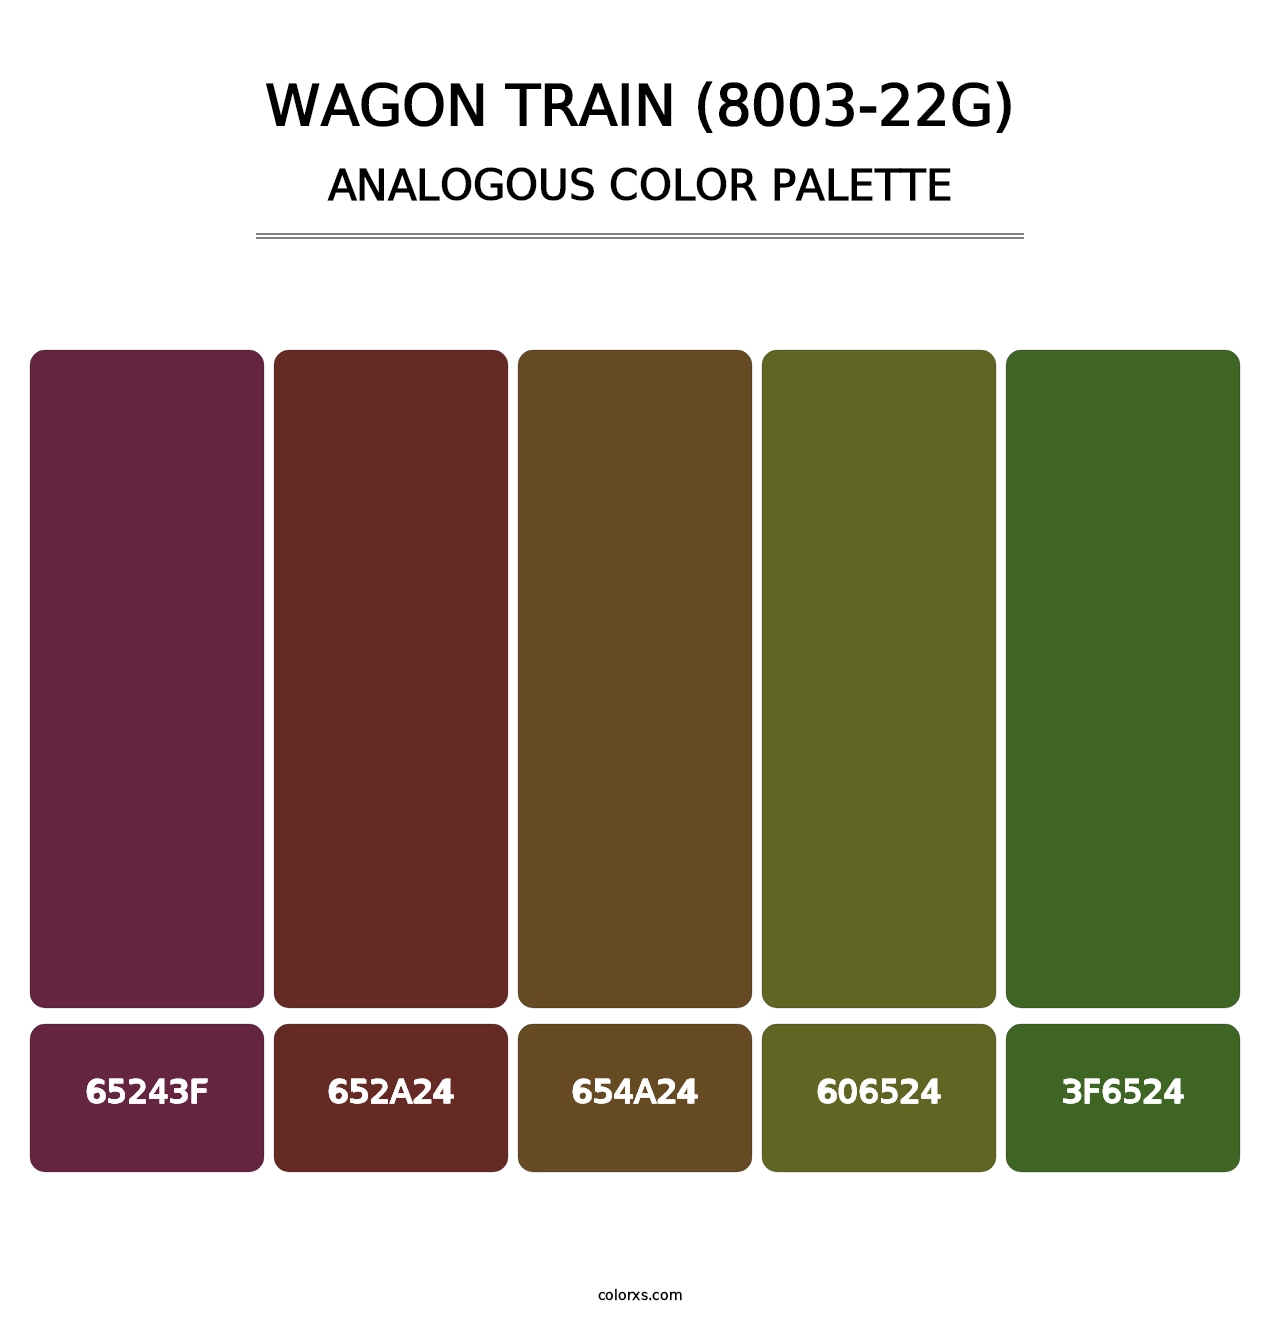 Wagon Train (8003-22G) - Analogous Color Palette